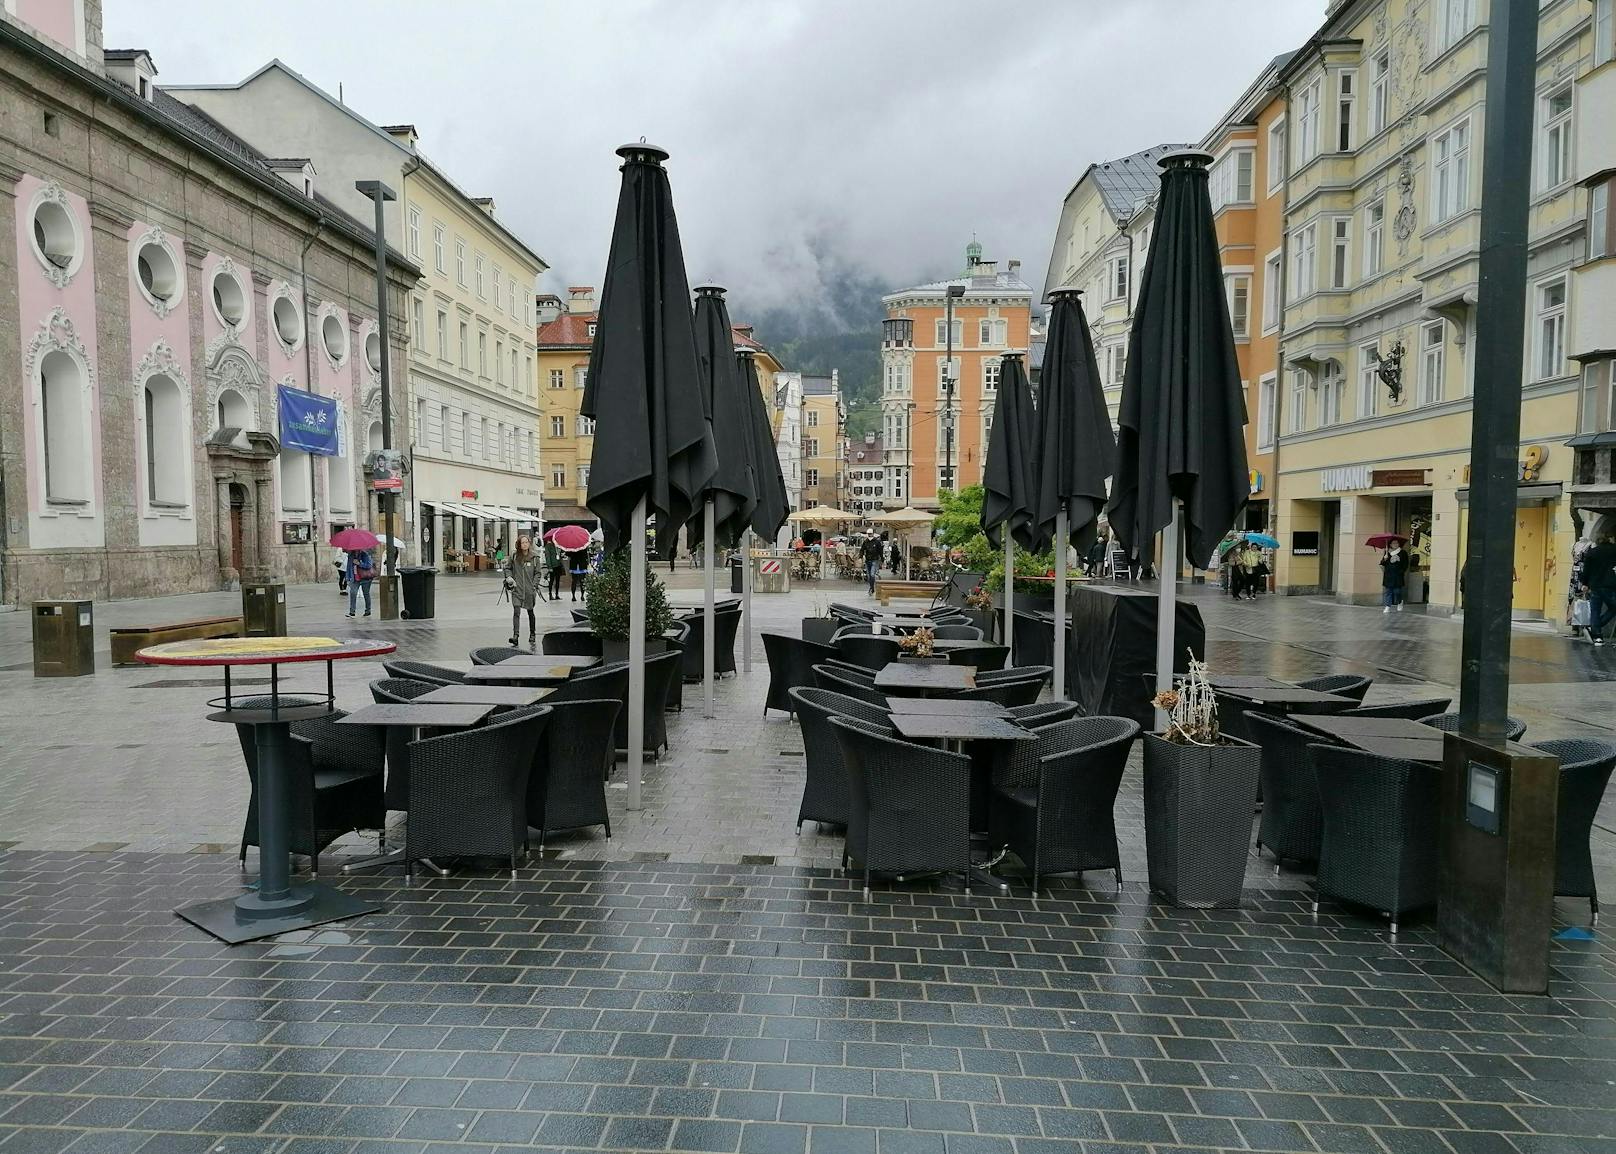 Ein leerer Gastgarten bei regnerischem Wetter in Innsbruck. (Symbolbild)